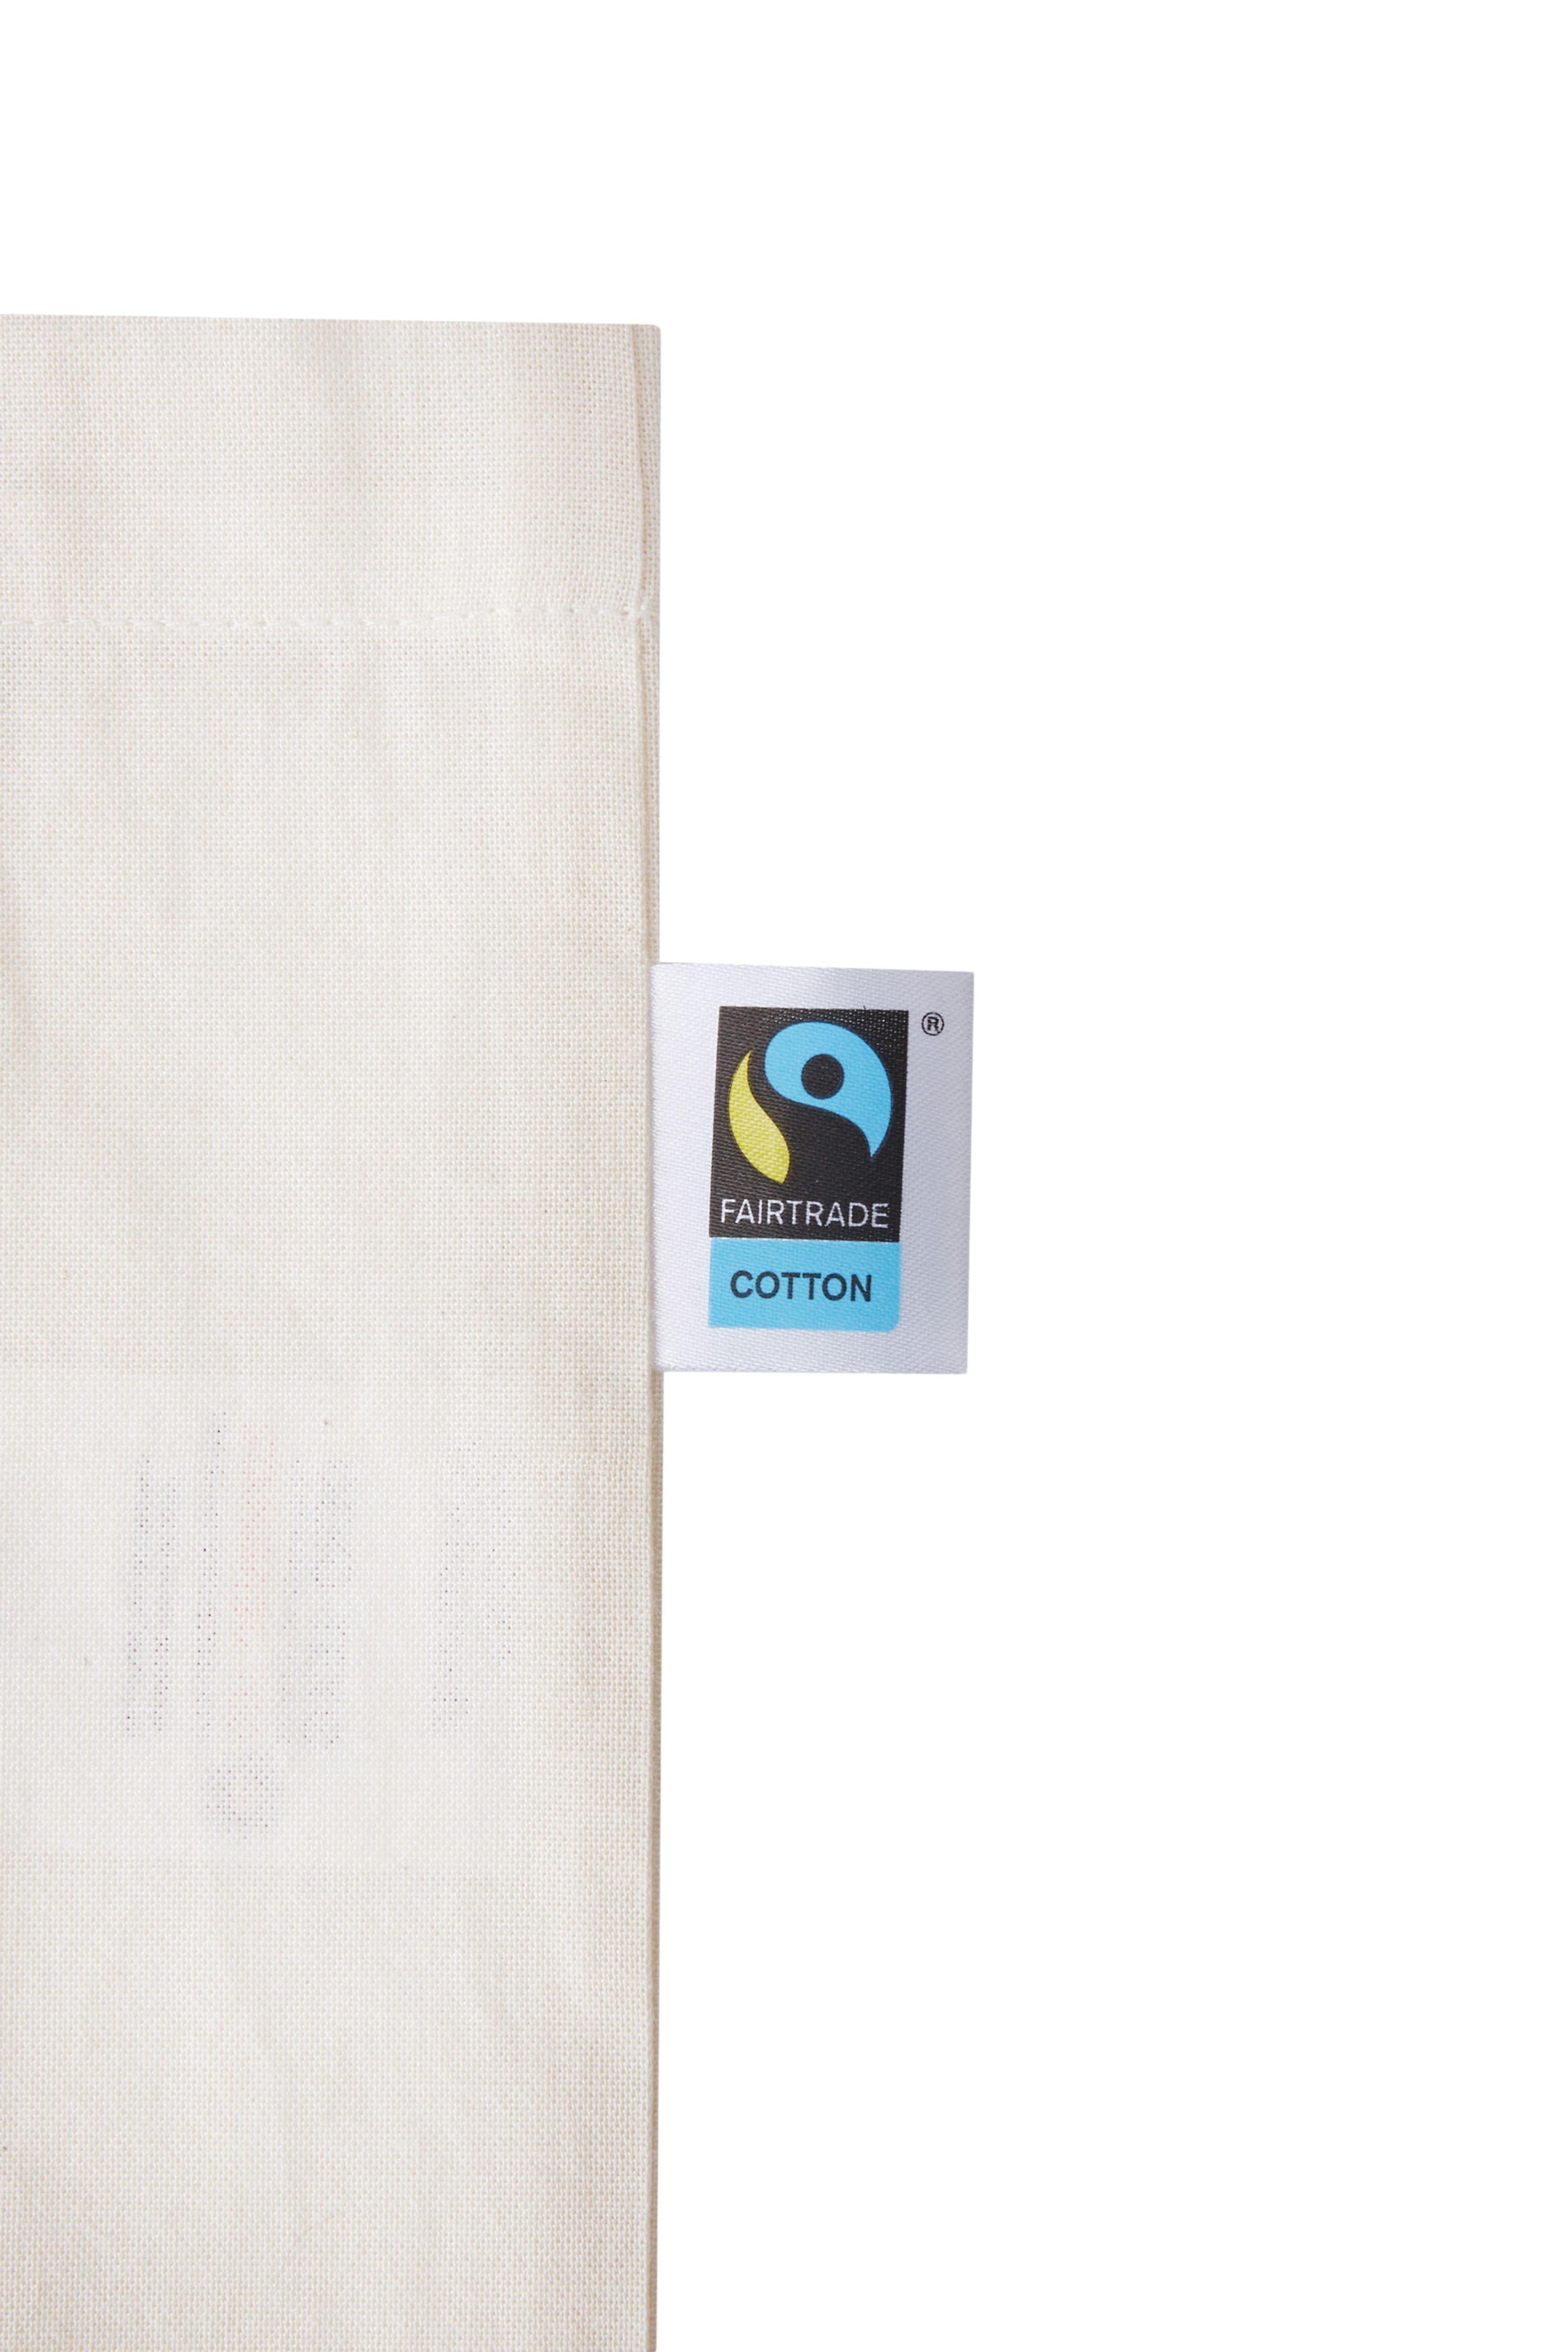 printwear - Baumwolltasche, Fairtrade-Baumwolle, lange Henkel 